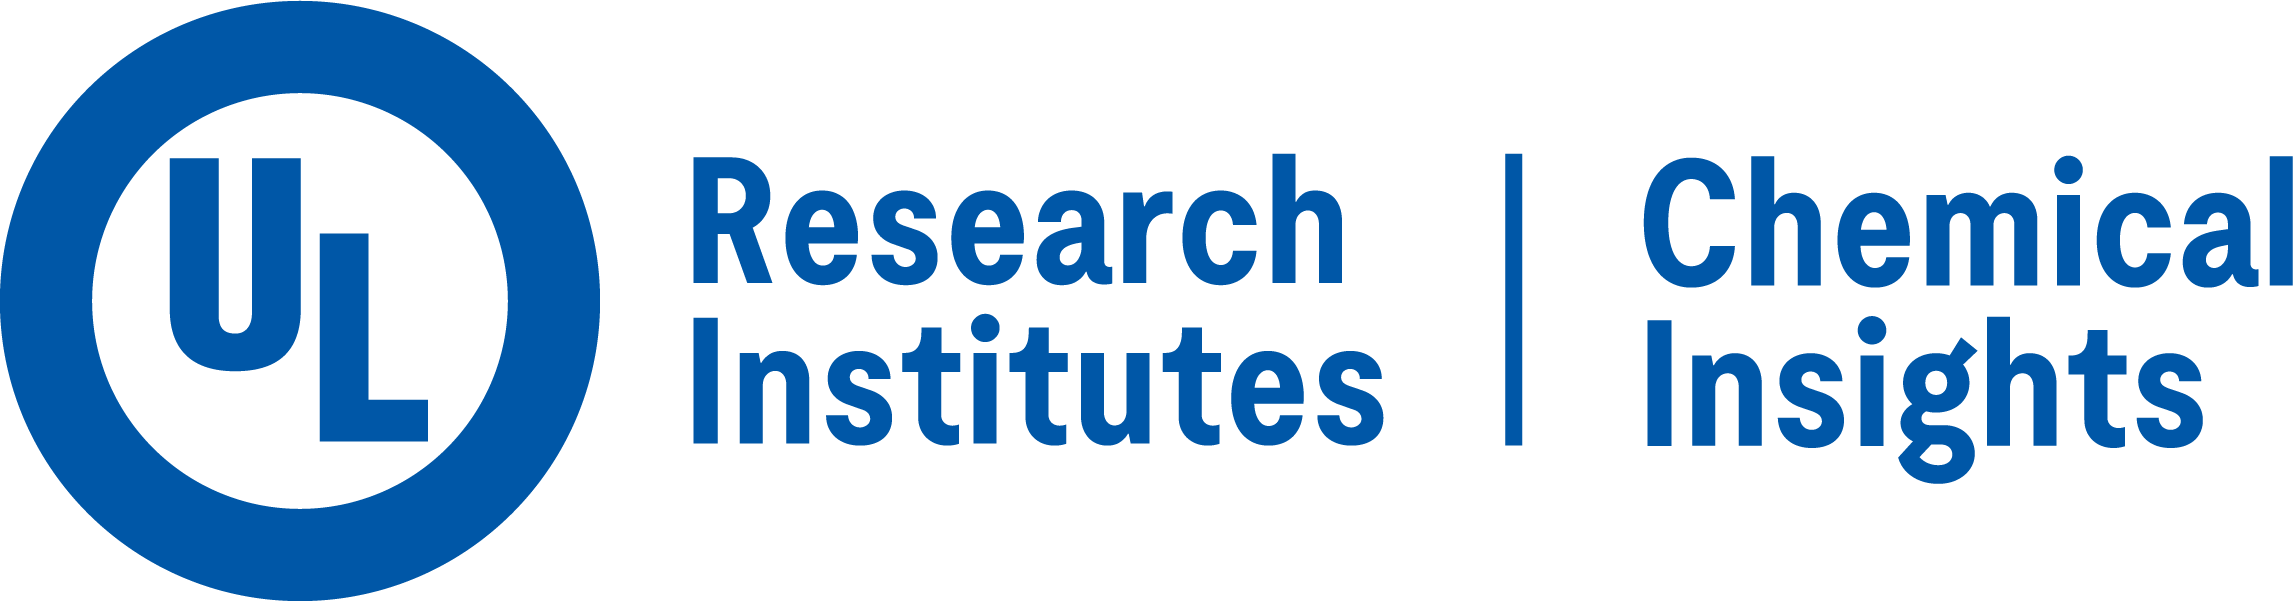 CIRI (Chemical Insights Research Institute)